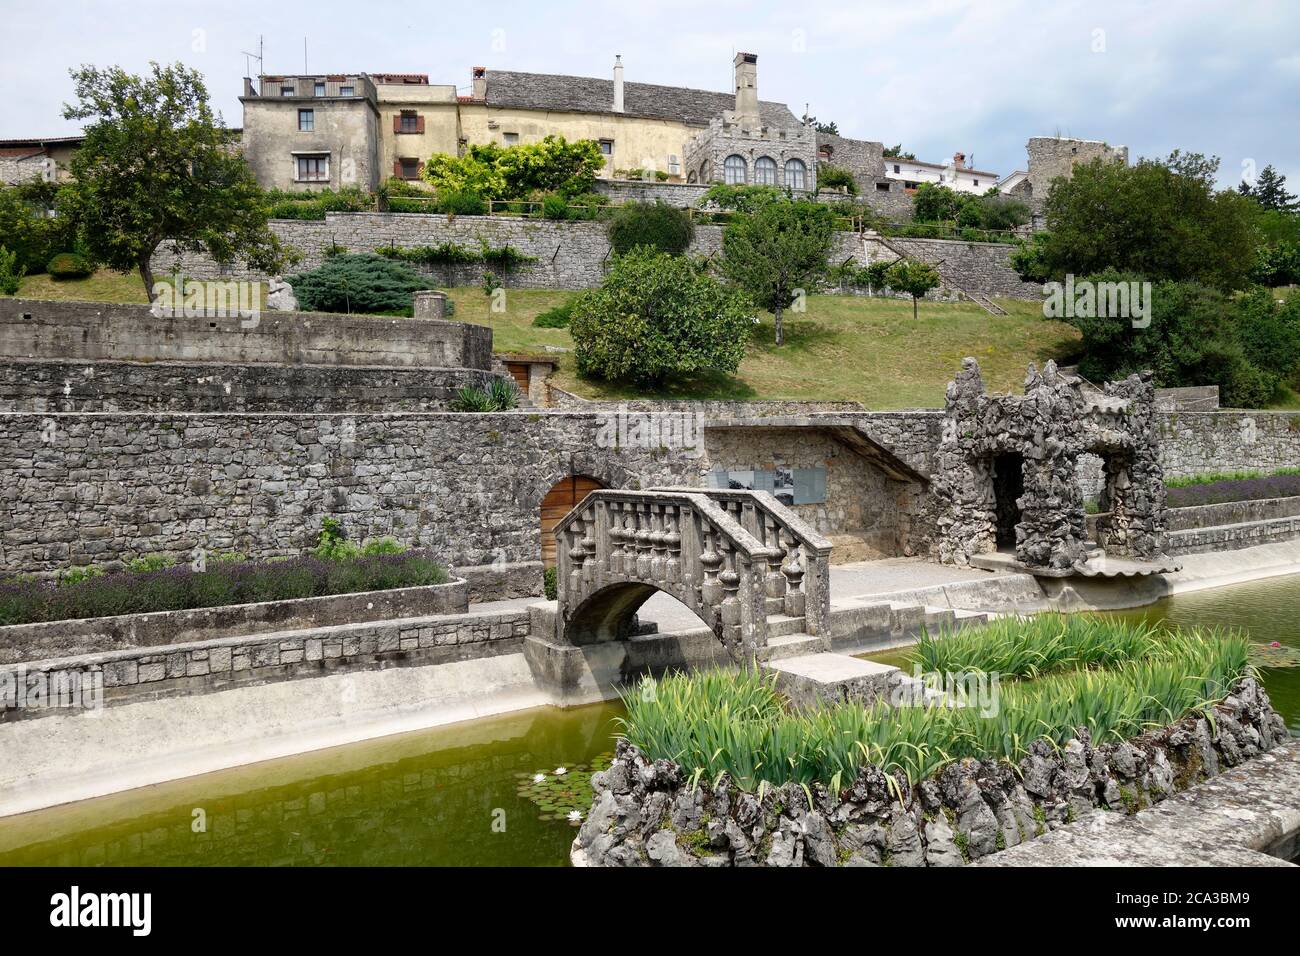 Štanjel, renovierte mittelalterliche Burg. Blick vom Park im Hinterhof. Komen Gemeinde, Kras Region, Slowenien. Stockfoto